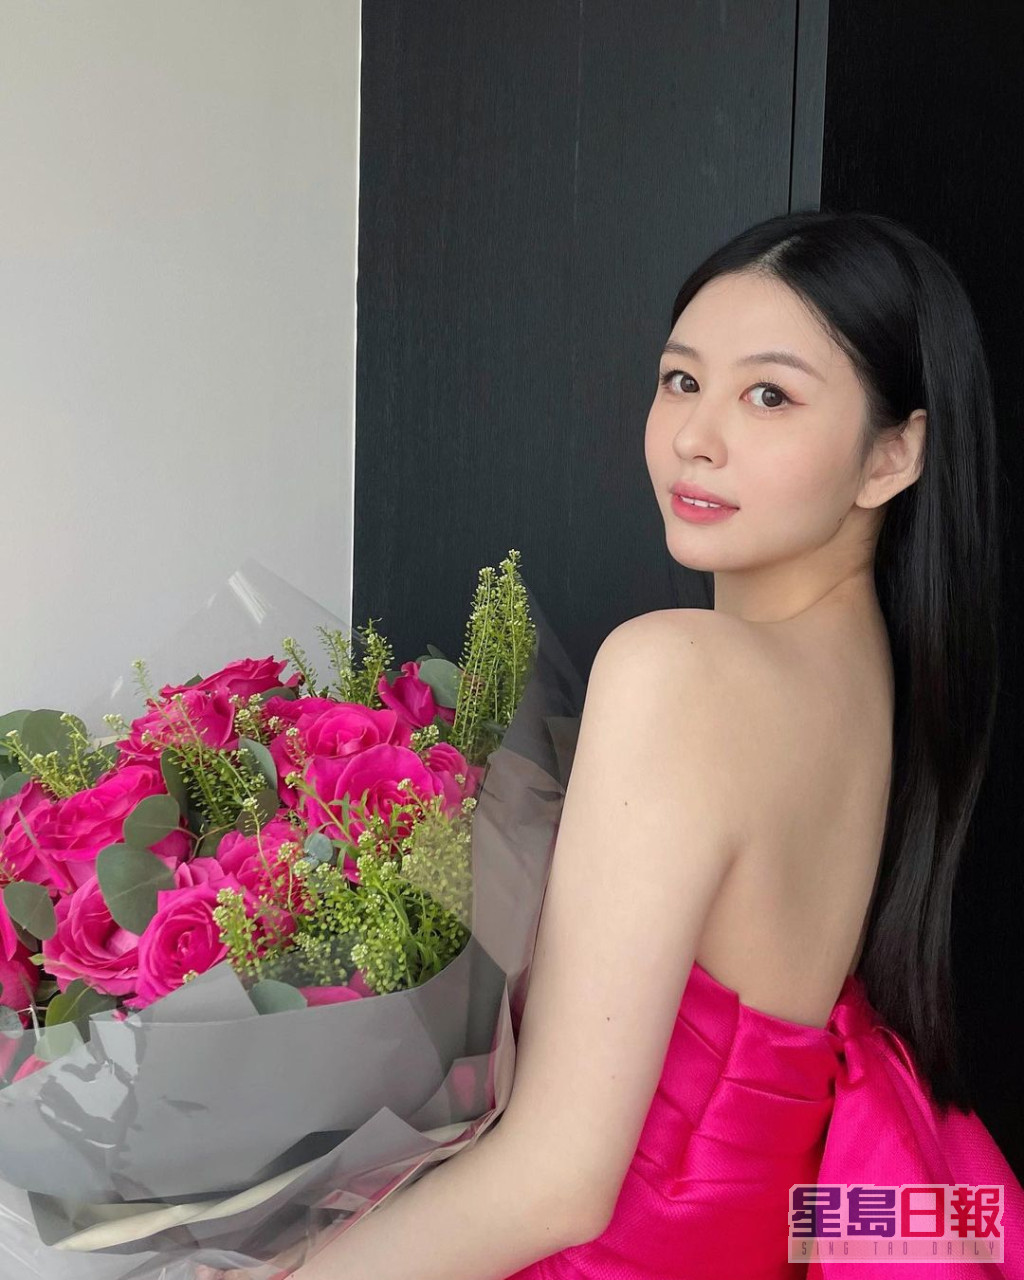 日前沈月於IG上載捧着大束玫瑰的照片，網民都猜測她暗示有男友。  ​